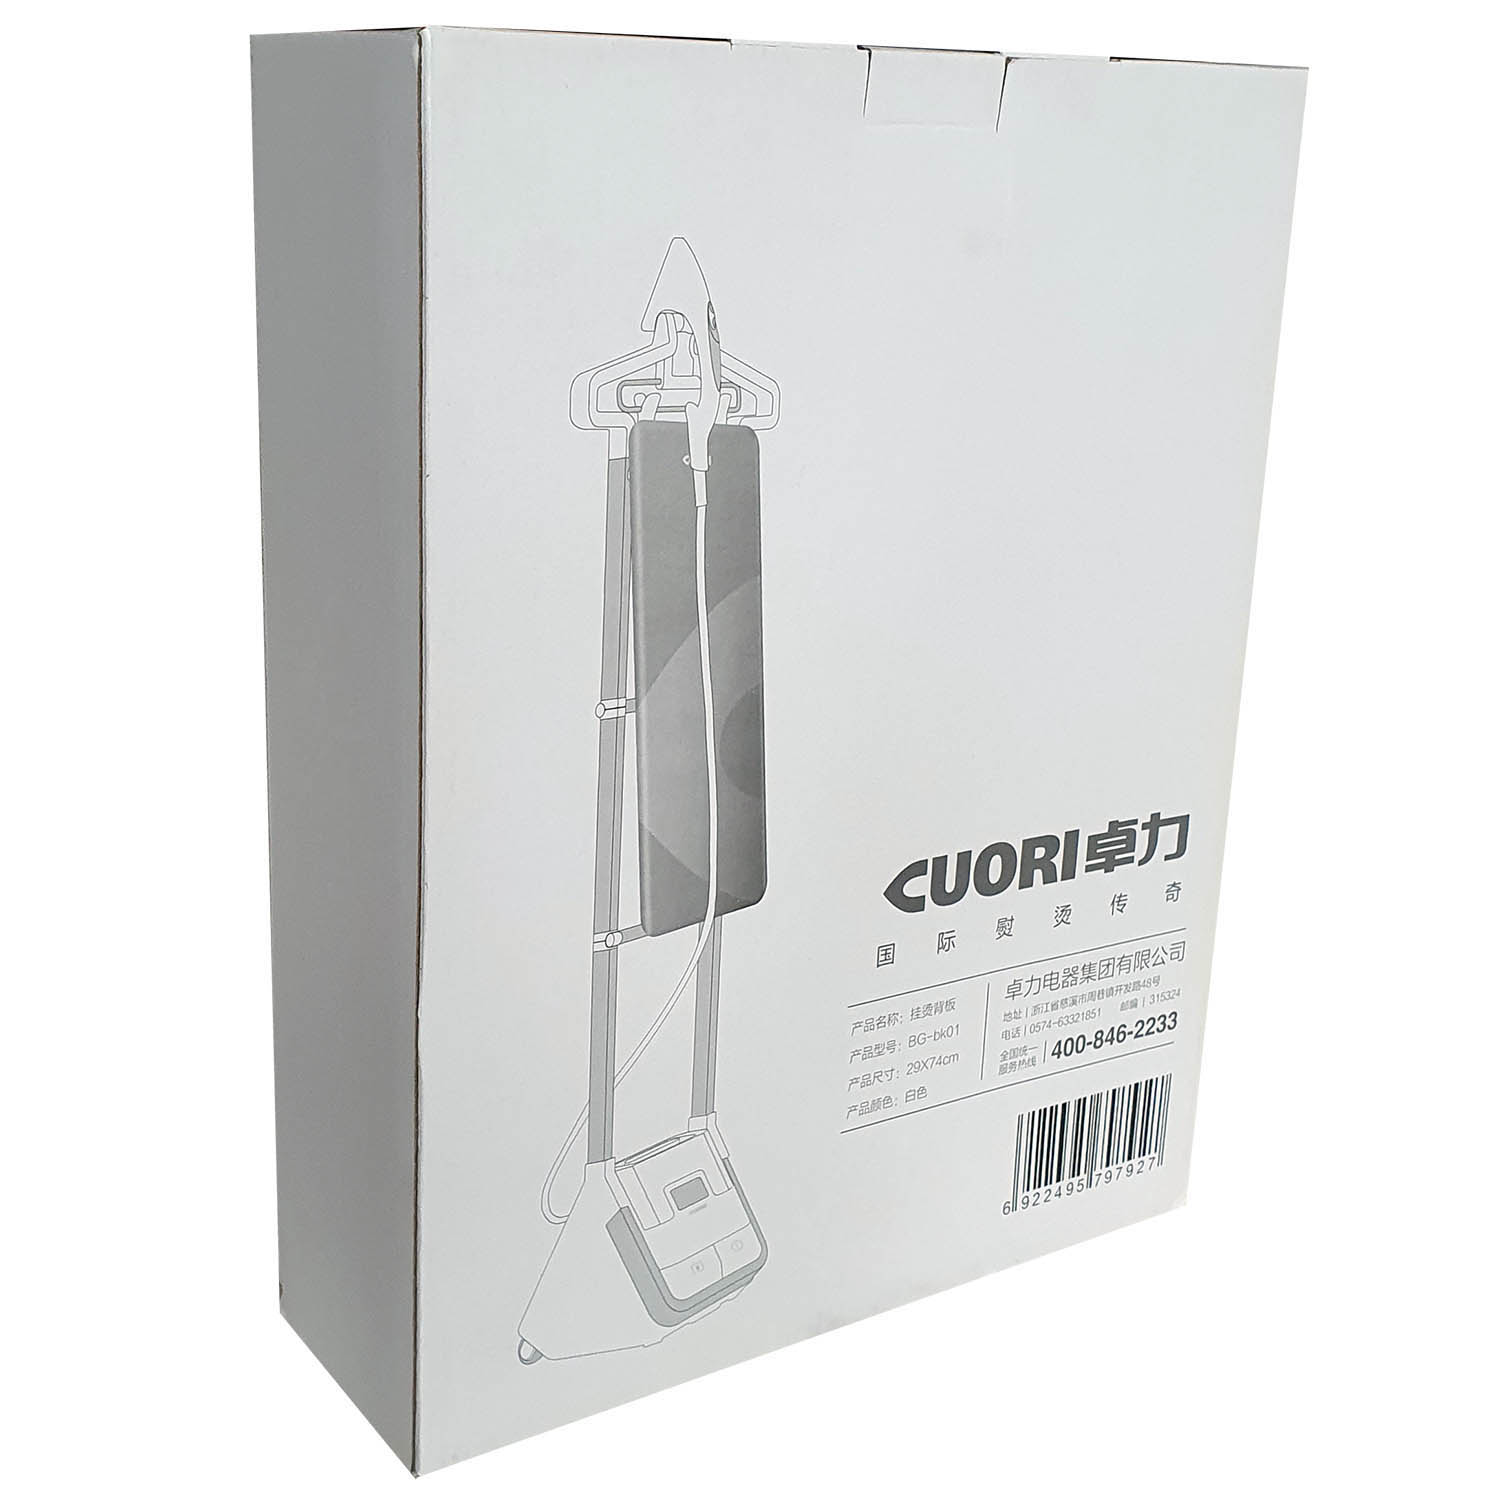 Гладильная доска Cuori для отпаривателя Runzel For-910 Jagarbast - упаковка